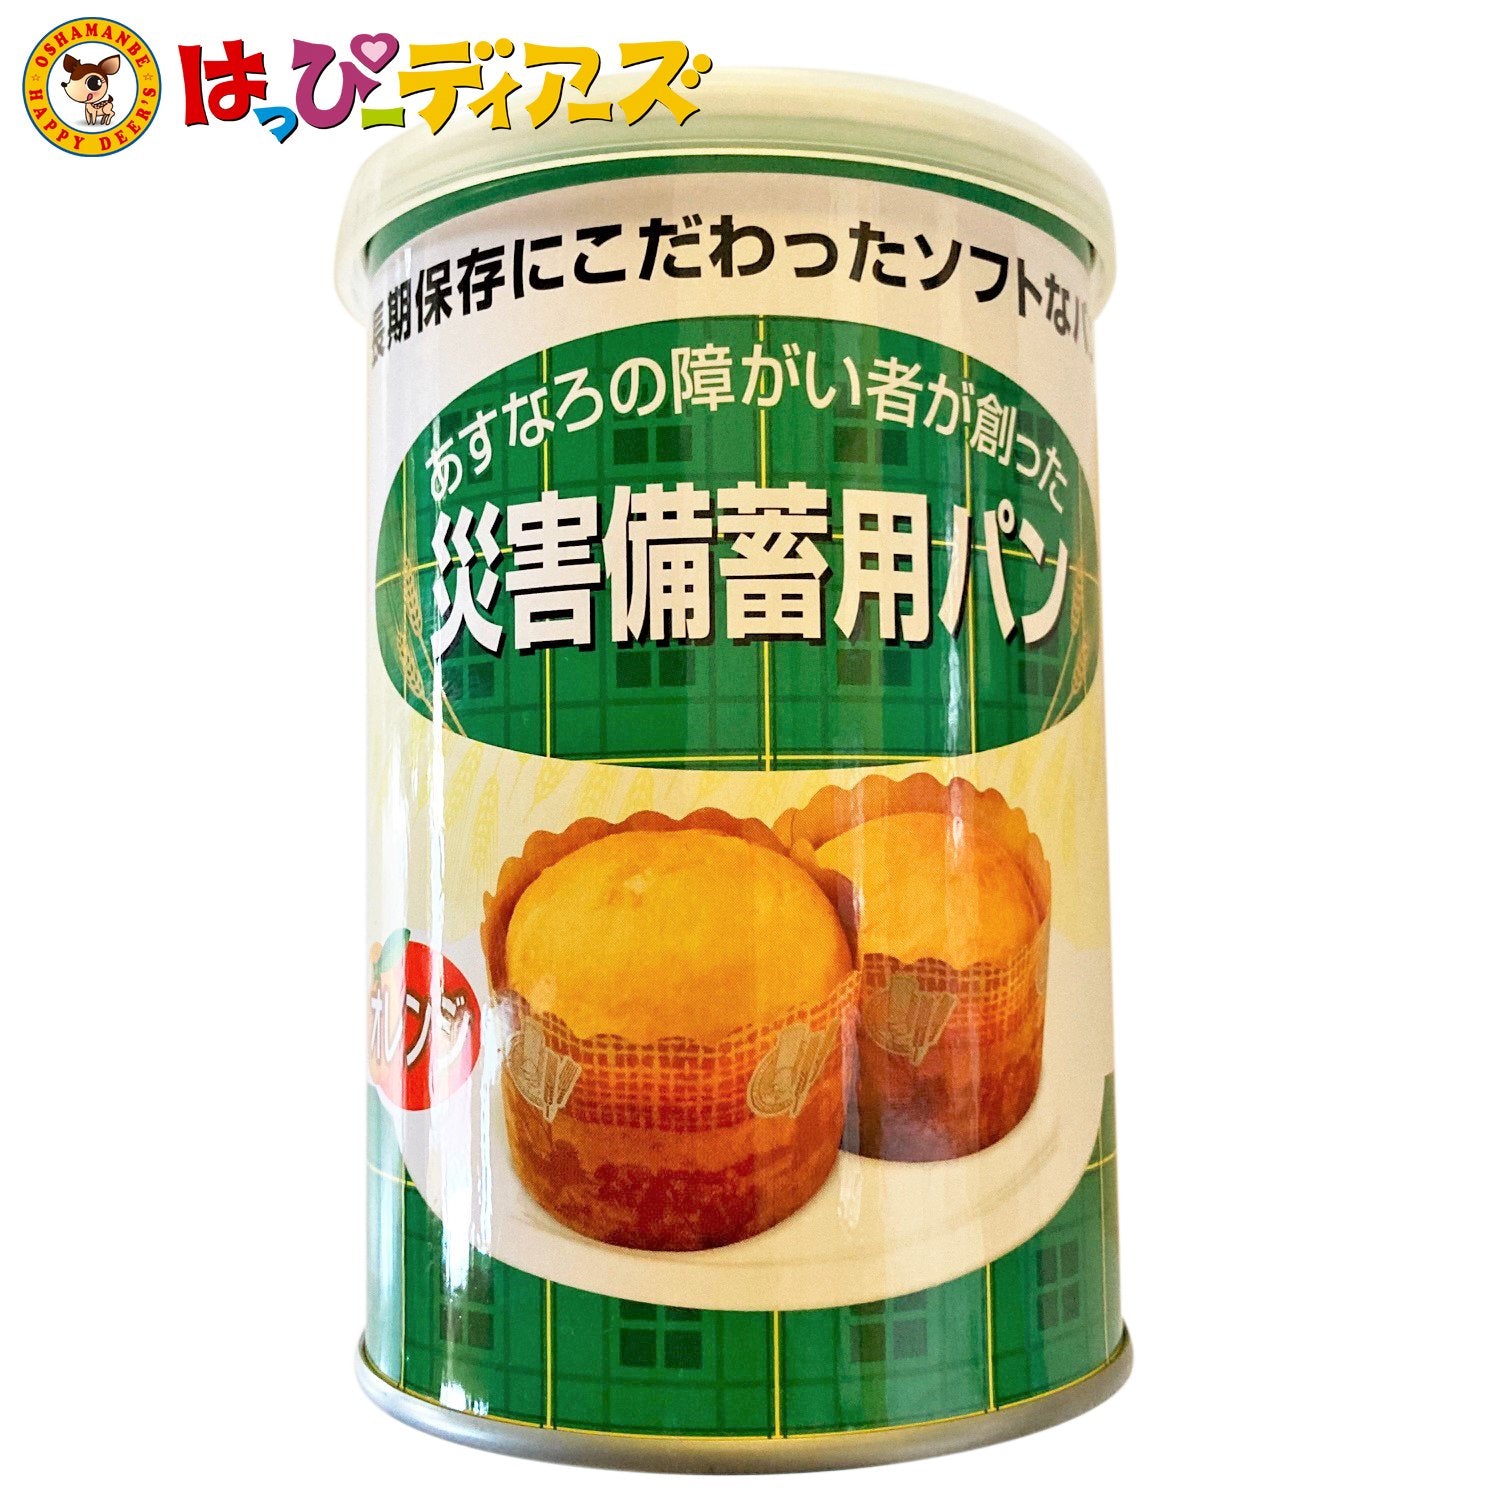 あすなろの障がい者が創った『災害備蓄用パン』缶詰 オレンジ1缶 (賞味 ...